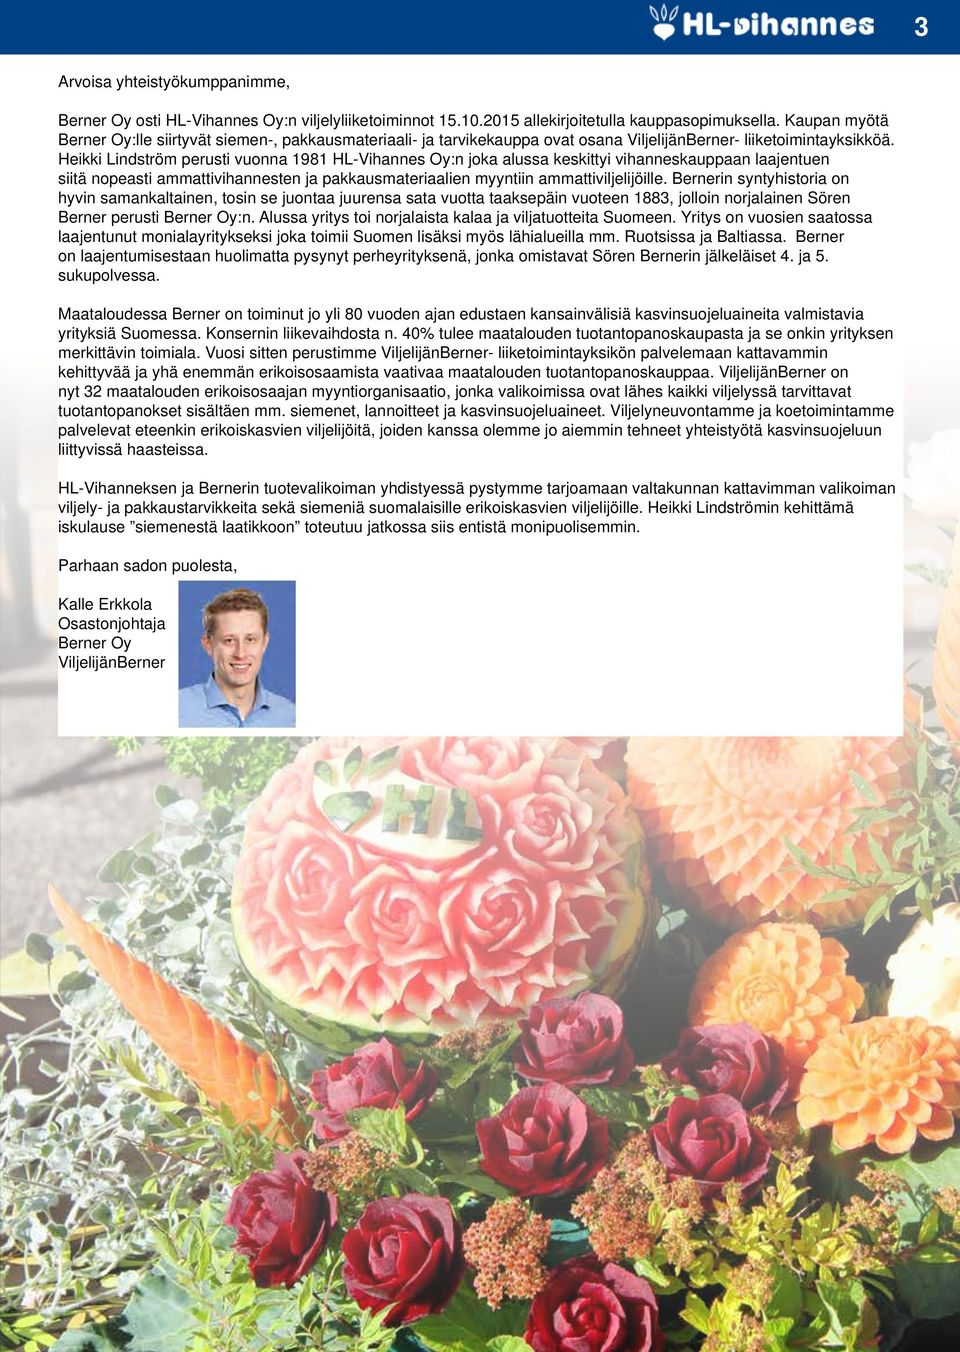 Heikki Lindström perusti vuonna 1981 HL-Vihannes Oy:n joka alussa keskittyi vihanneskauppaan laajentuen siitä nopeasti ammattivihannesten ja pakkausmateriaalien myyntiin ammattiviljelijöille.